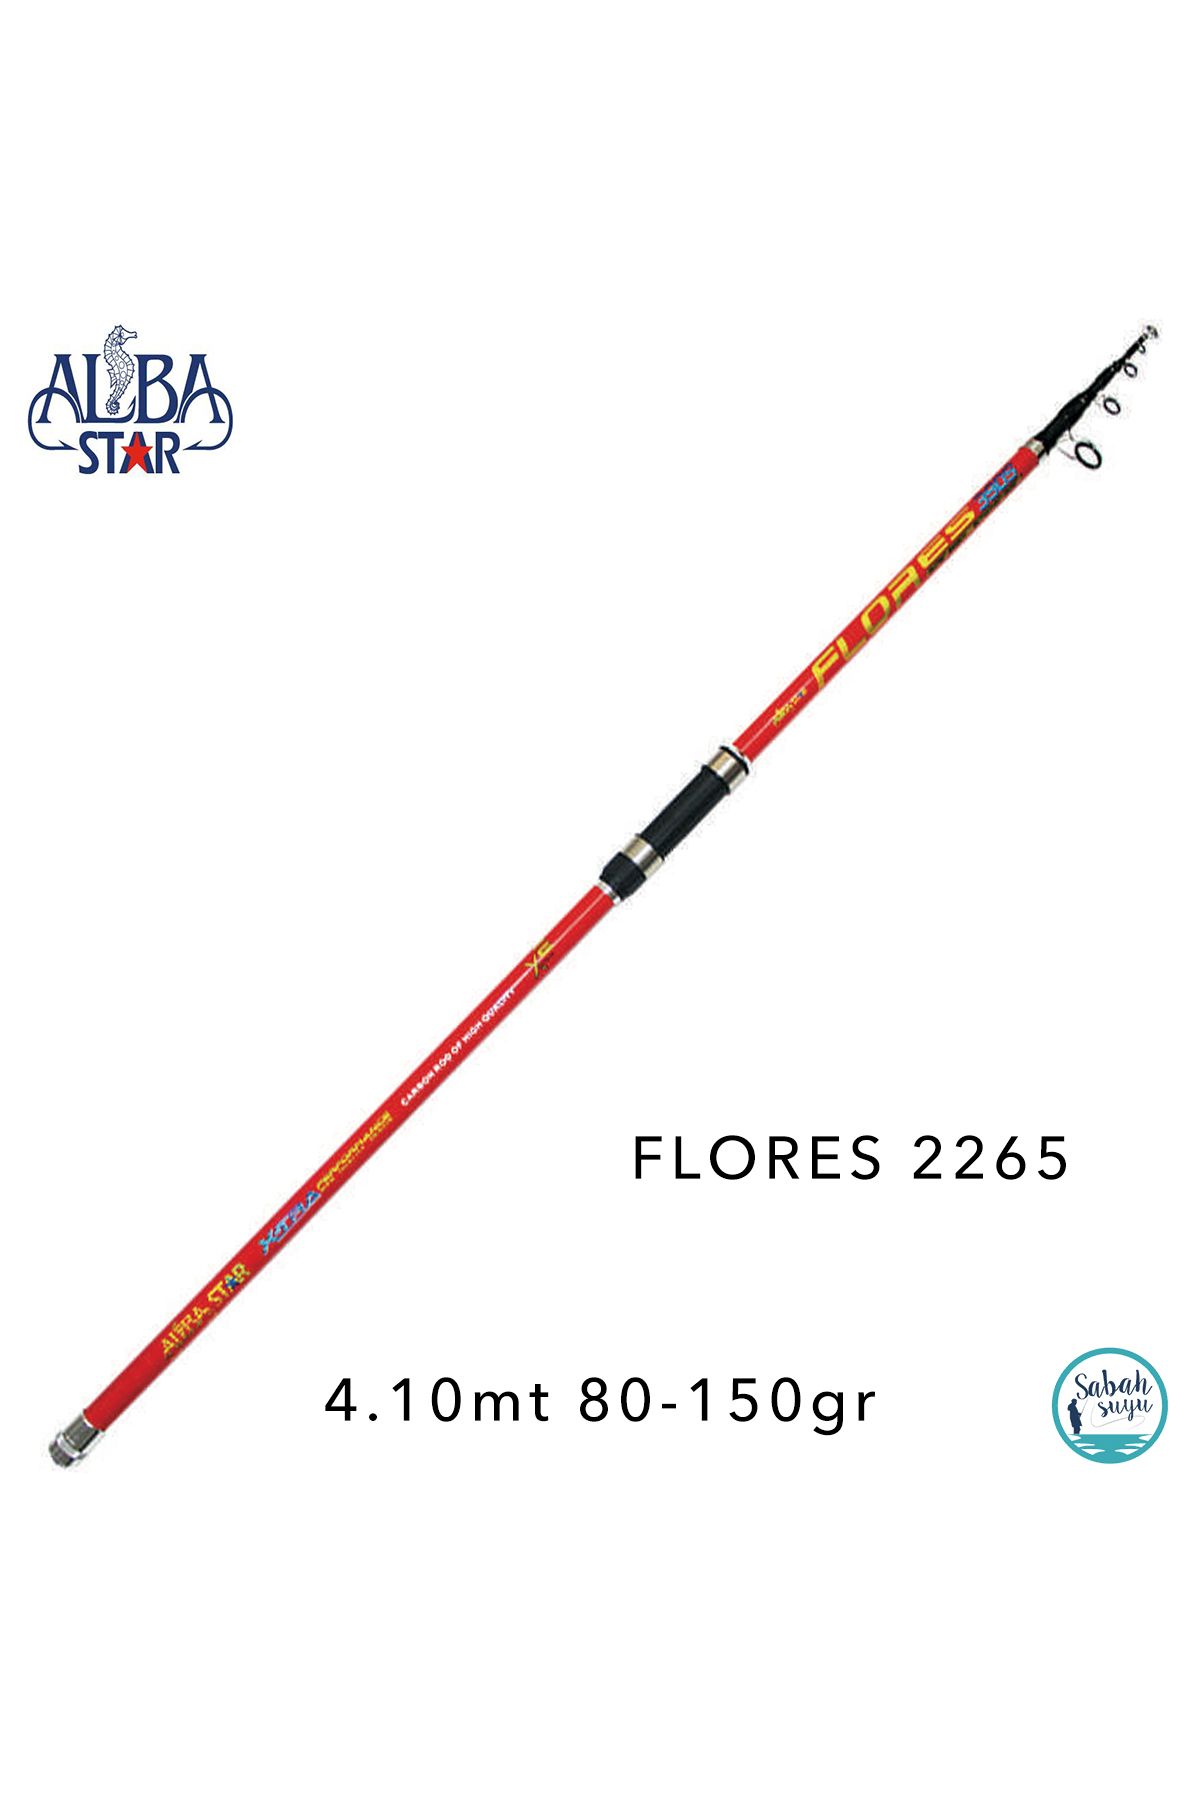 AlbaStar 2265 Flores 4.10mt 80-150gr Teleskopik Surf Kamış